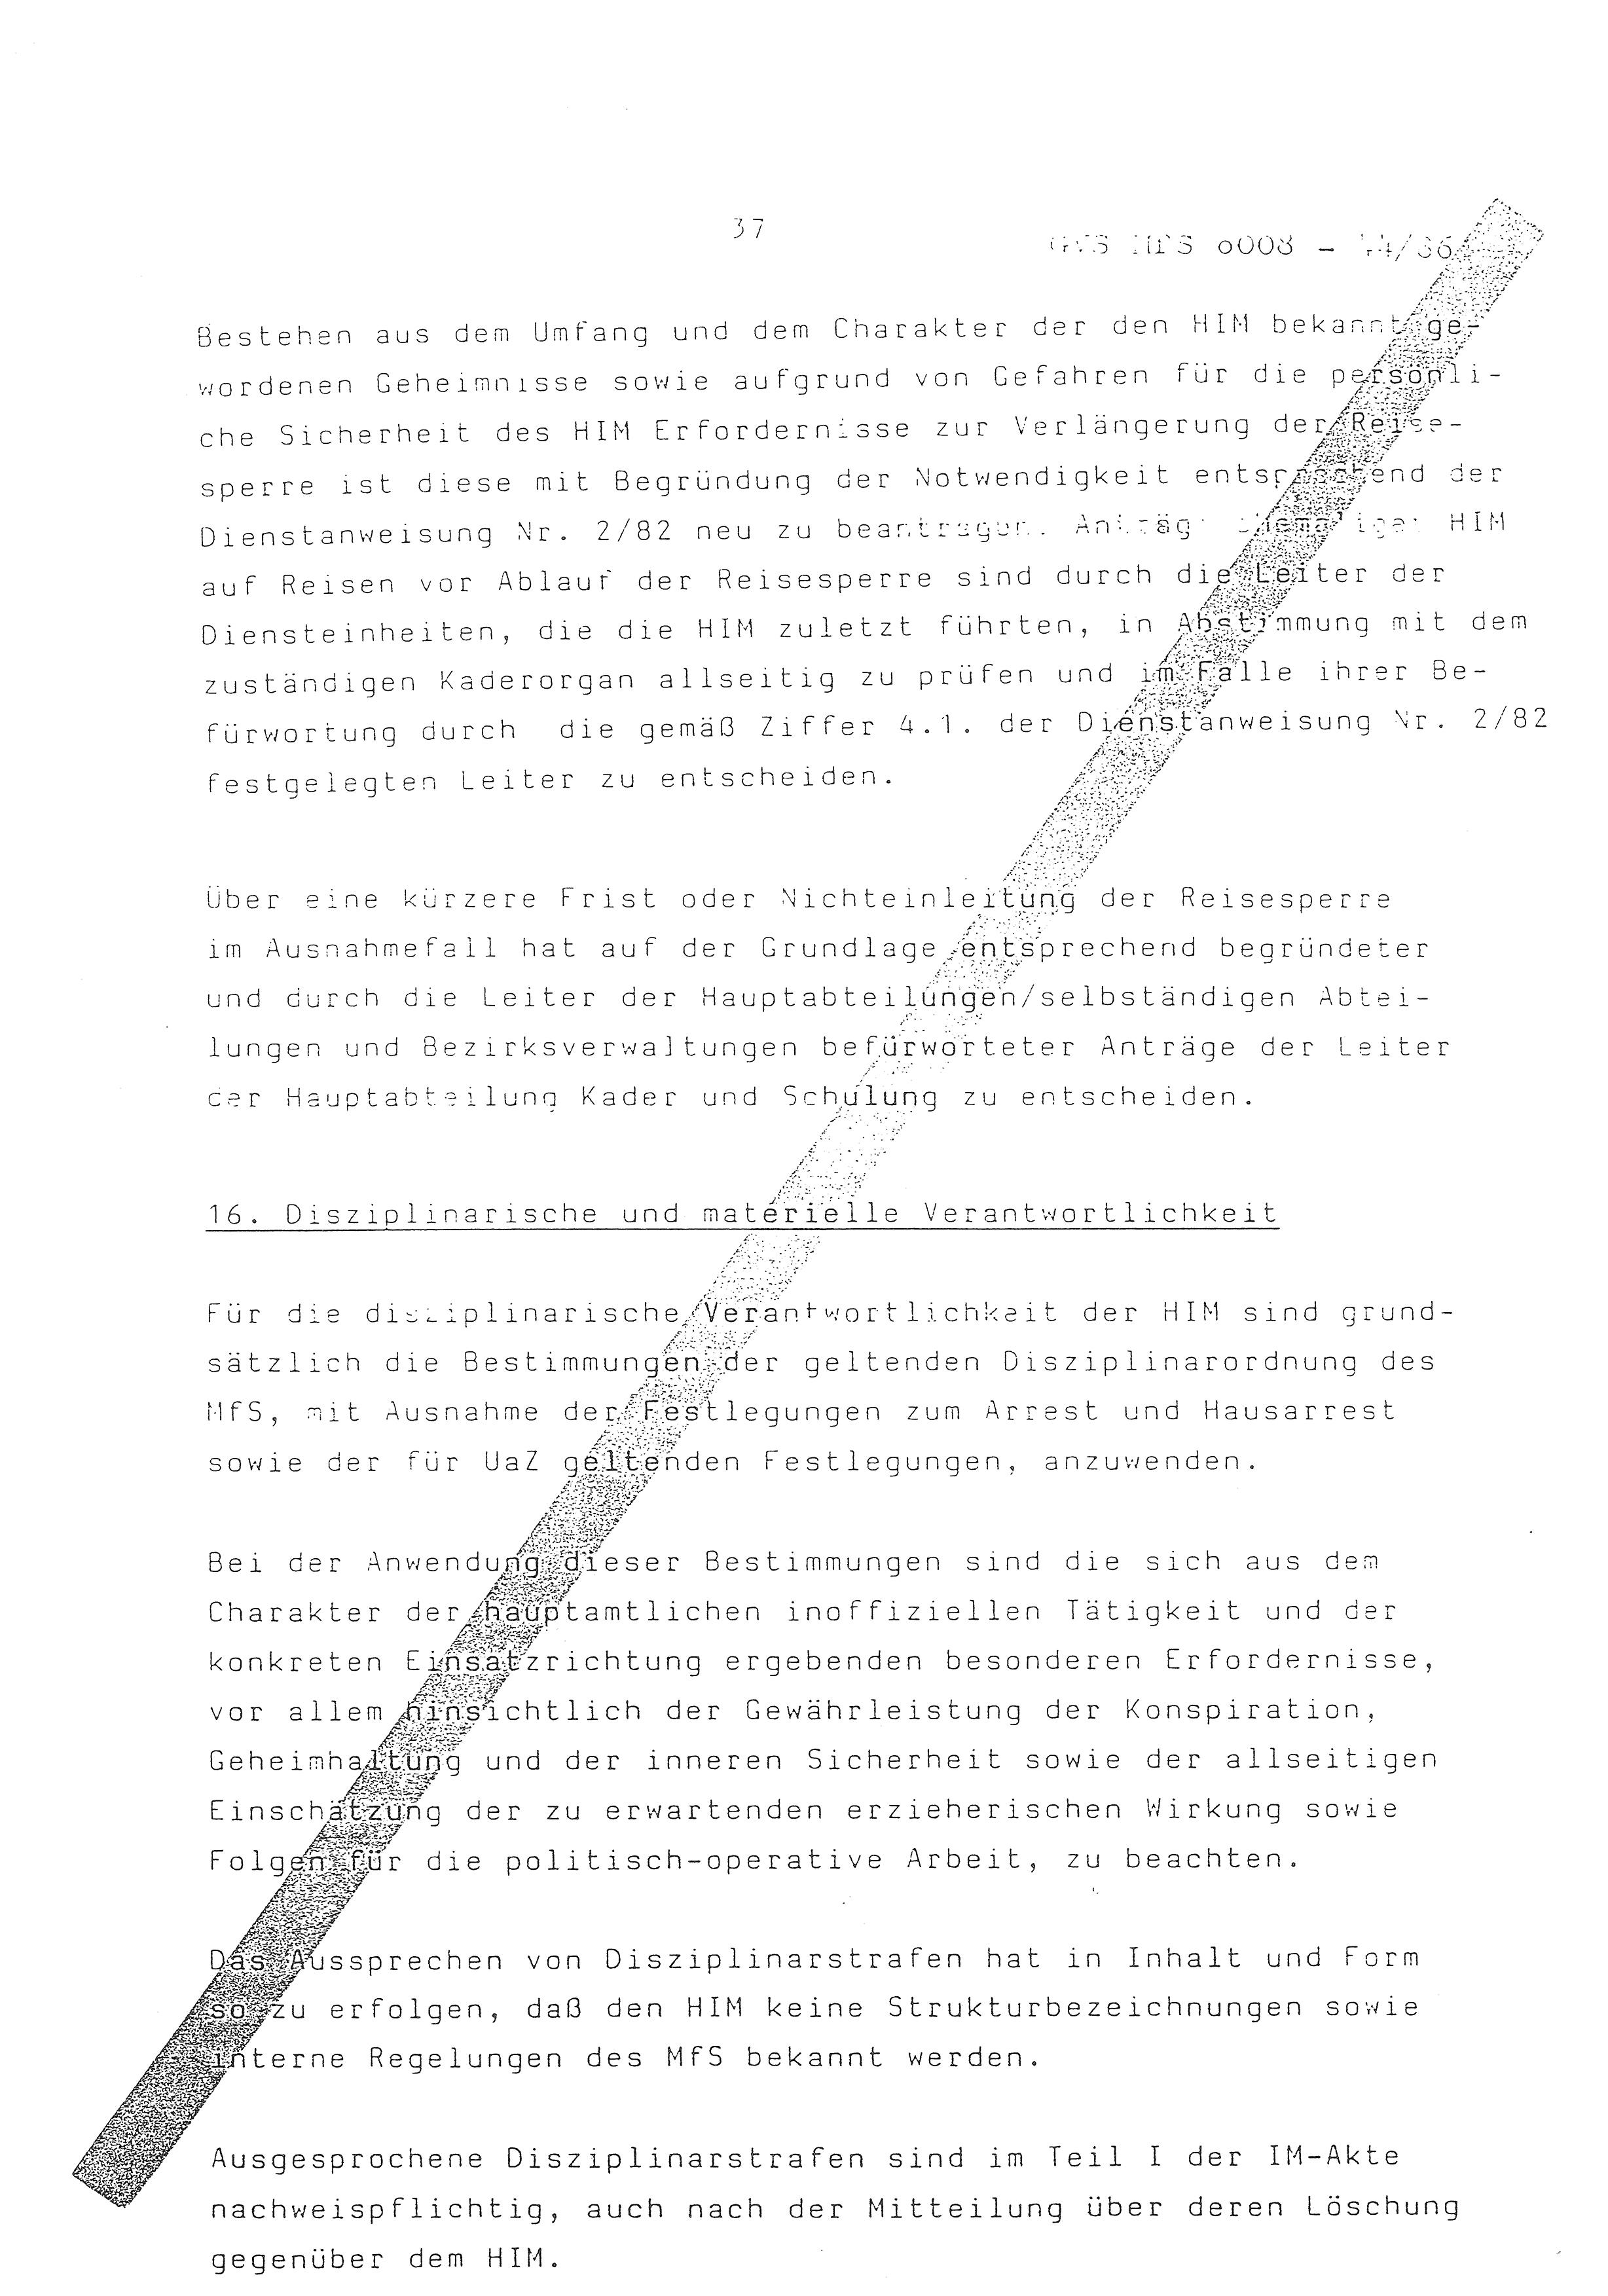 2. Durchführungsbestimmung zur Richtlinie 1/79 über die Arbeit mit hauptamtlichen Mitarbeitern des MfS (HIM), Deutsche Demokratische Republik (DDR), Ministerium für Staatssicherheit (MfS), Der Minister (Mielke), Geheime Verschlußsache (GVS) ooo8-44/86, Berlin 1986, Seite 37 (2. DB RL 1/79 DDR MfS Min. GVS ooo8-44/86 1986, S. 37)